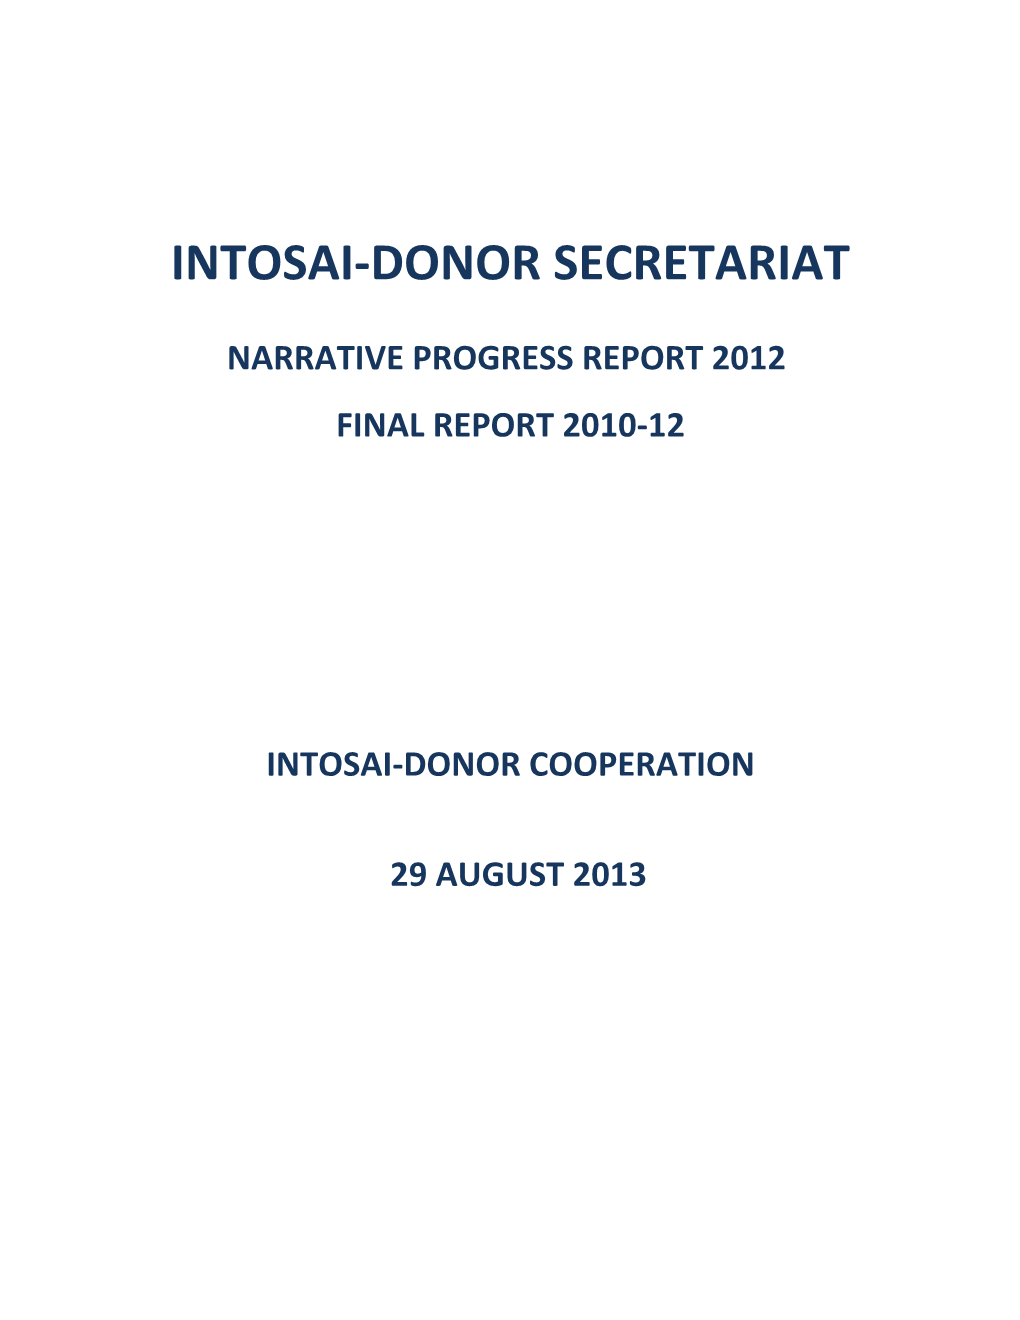 Intosai-Donor Secretariat